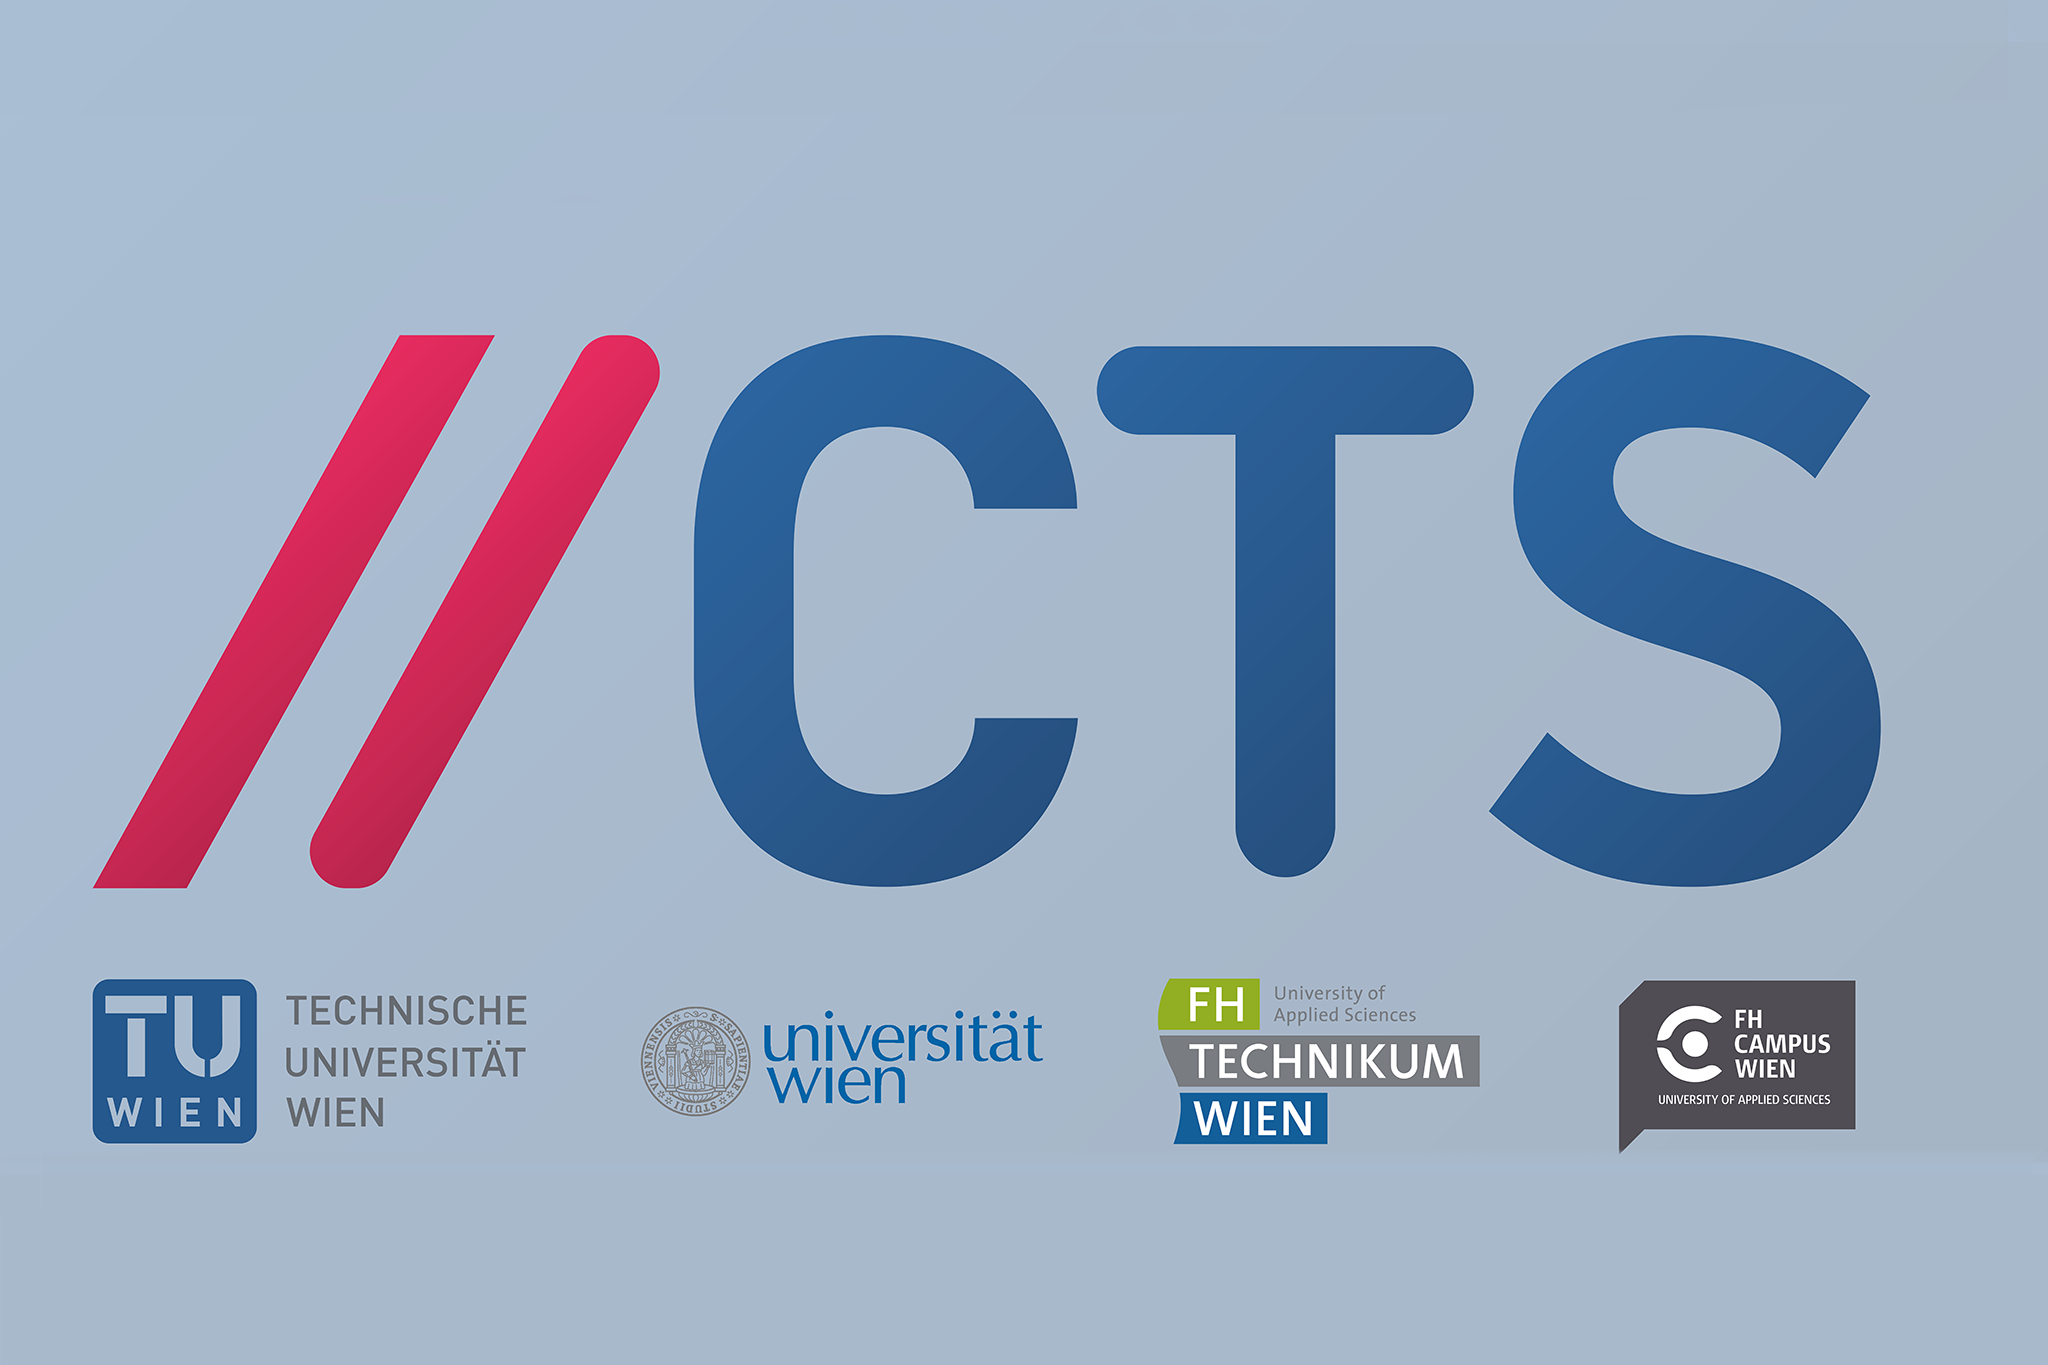 Logo CTS groß, darunter die Logos von TU Wien, Universität Wien, FH Technikum Wien und FH Campus Wien